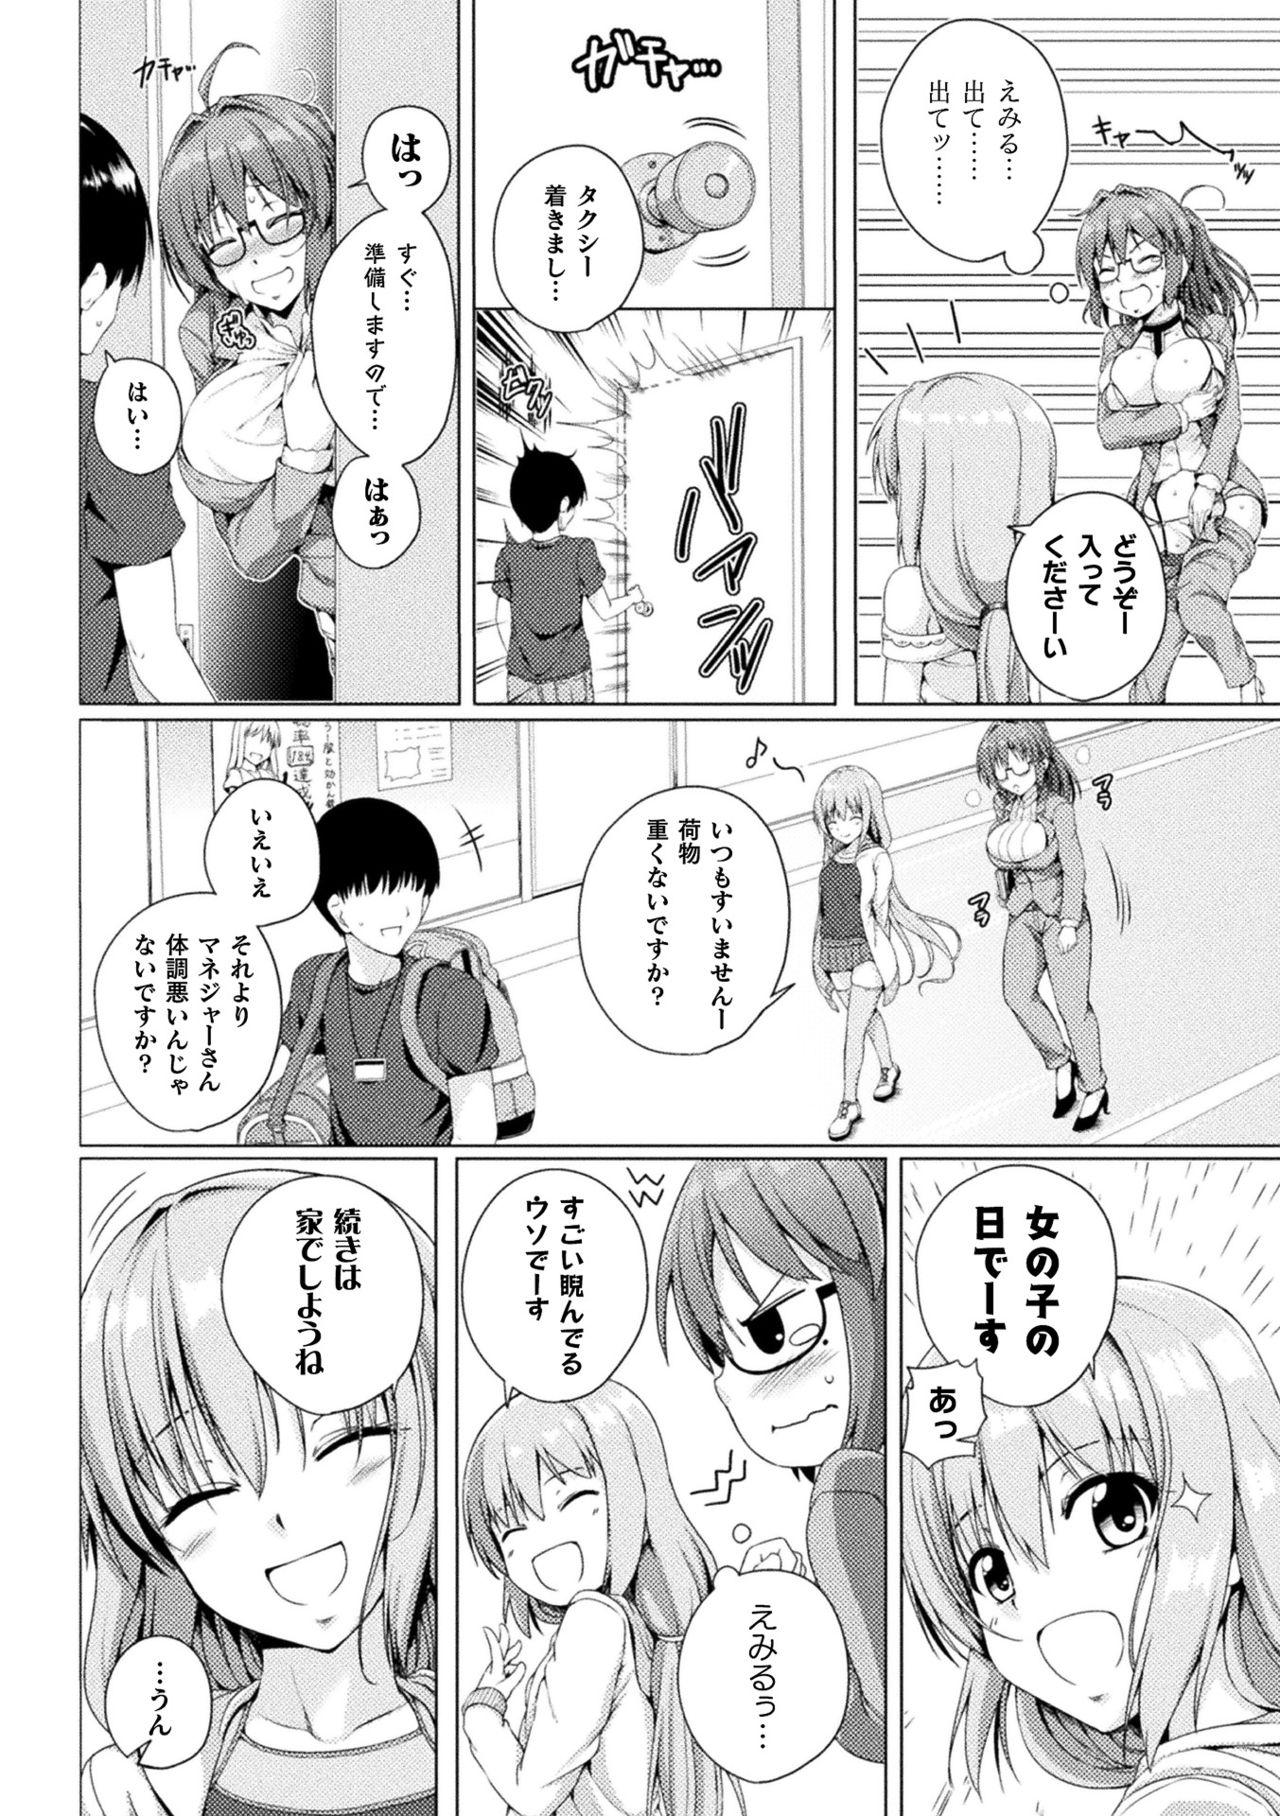 2D Comic Magazine Mesugaki vs Yasashii Onee-san Vol. 1 9